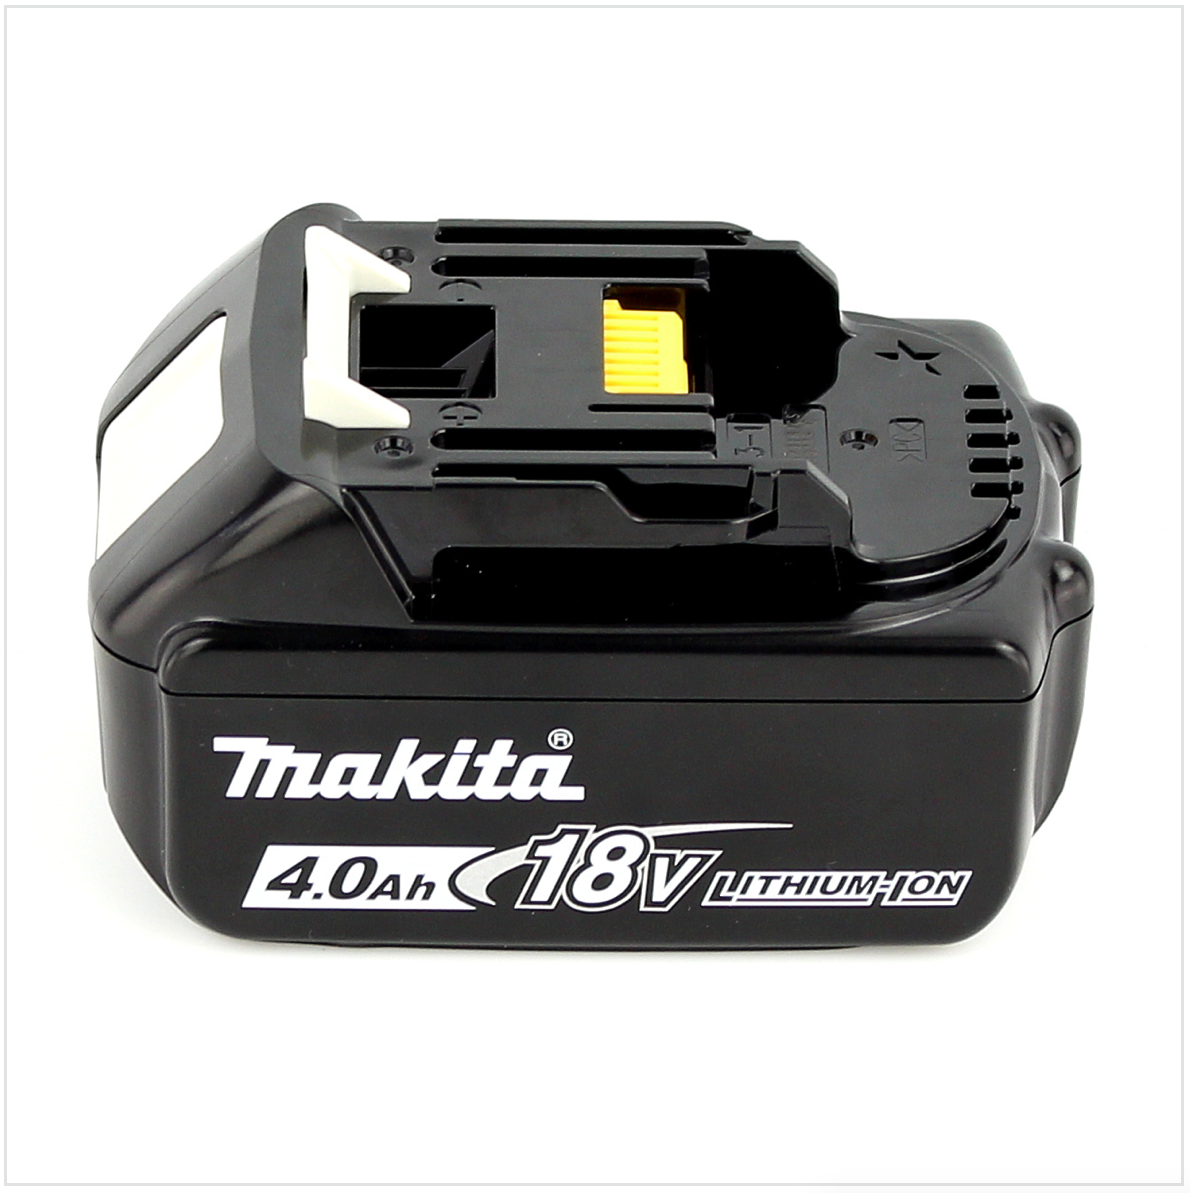 Makita DEADML / DML 805 LED Baustrahler 14,4 - 18 Volt / 230 Volt + 1x BL 1840 B 18V - 4Ah Li-Ion Akku mit LED - Anzeige - Toolbrothers